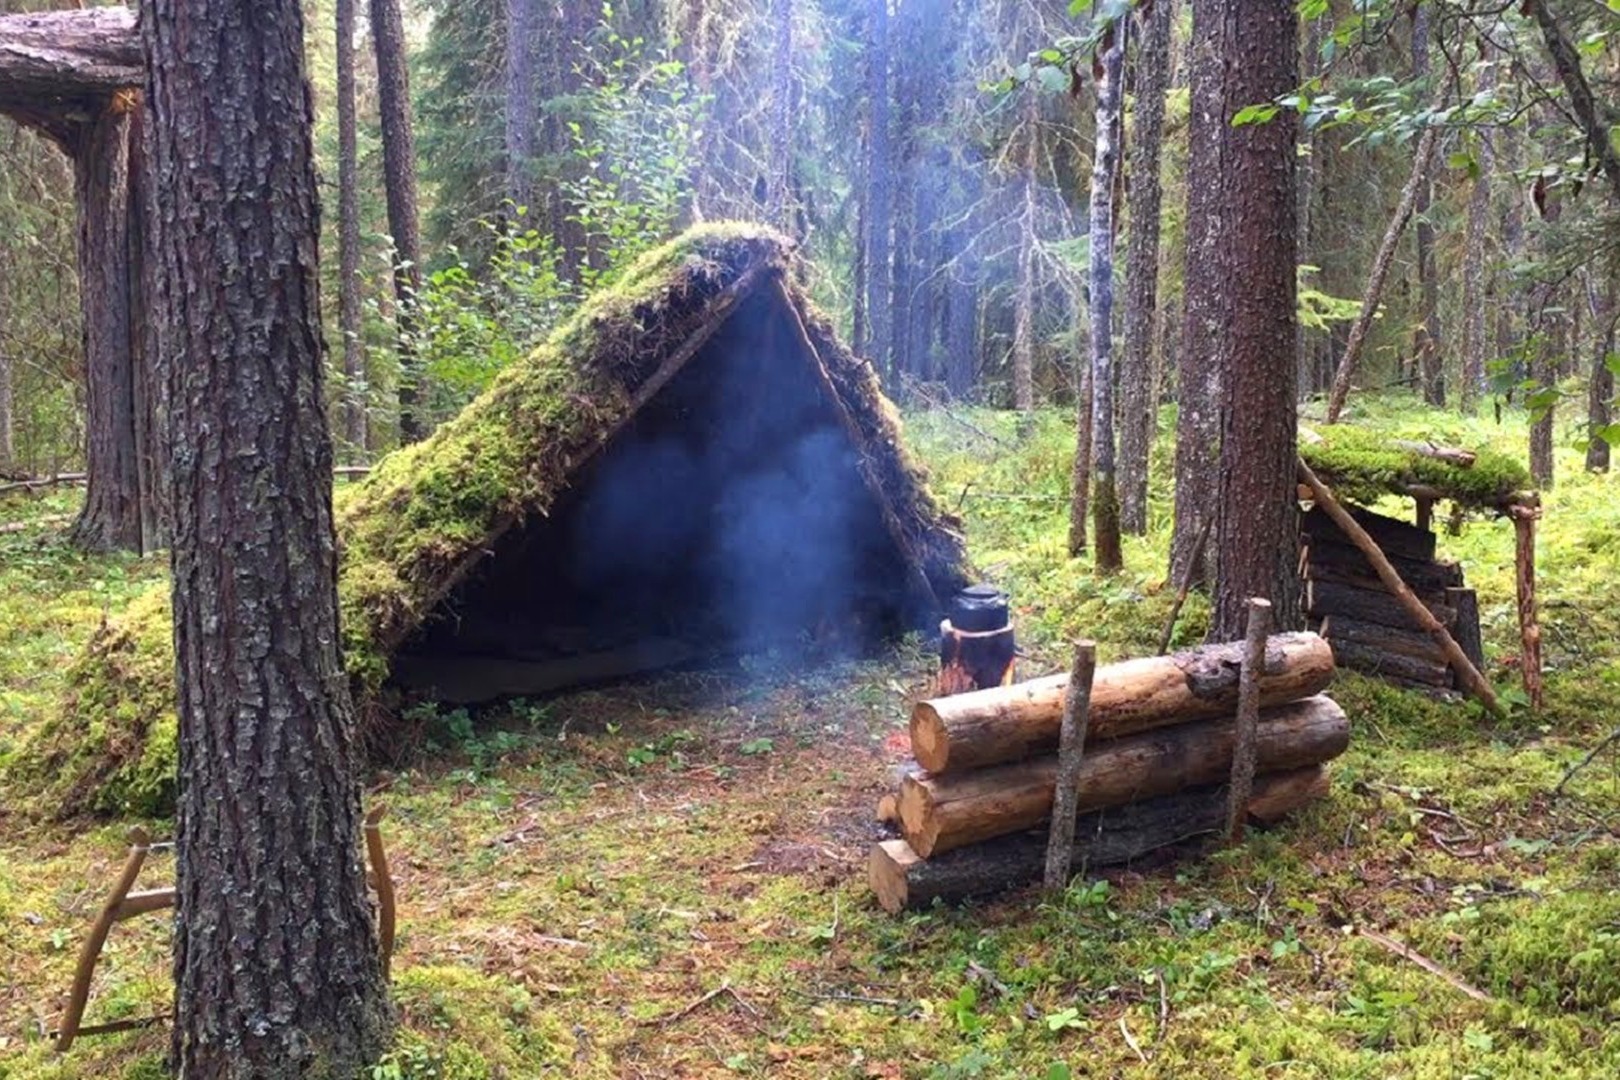 丛林露营搭建实木庇护所,生堆篝火烹饪美食,享受一个人的悠闲